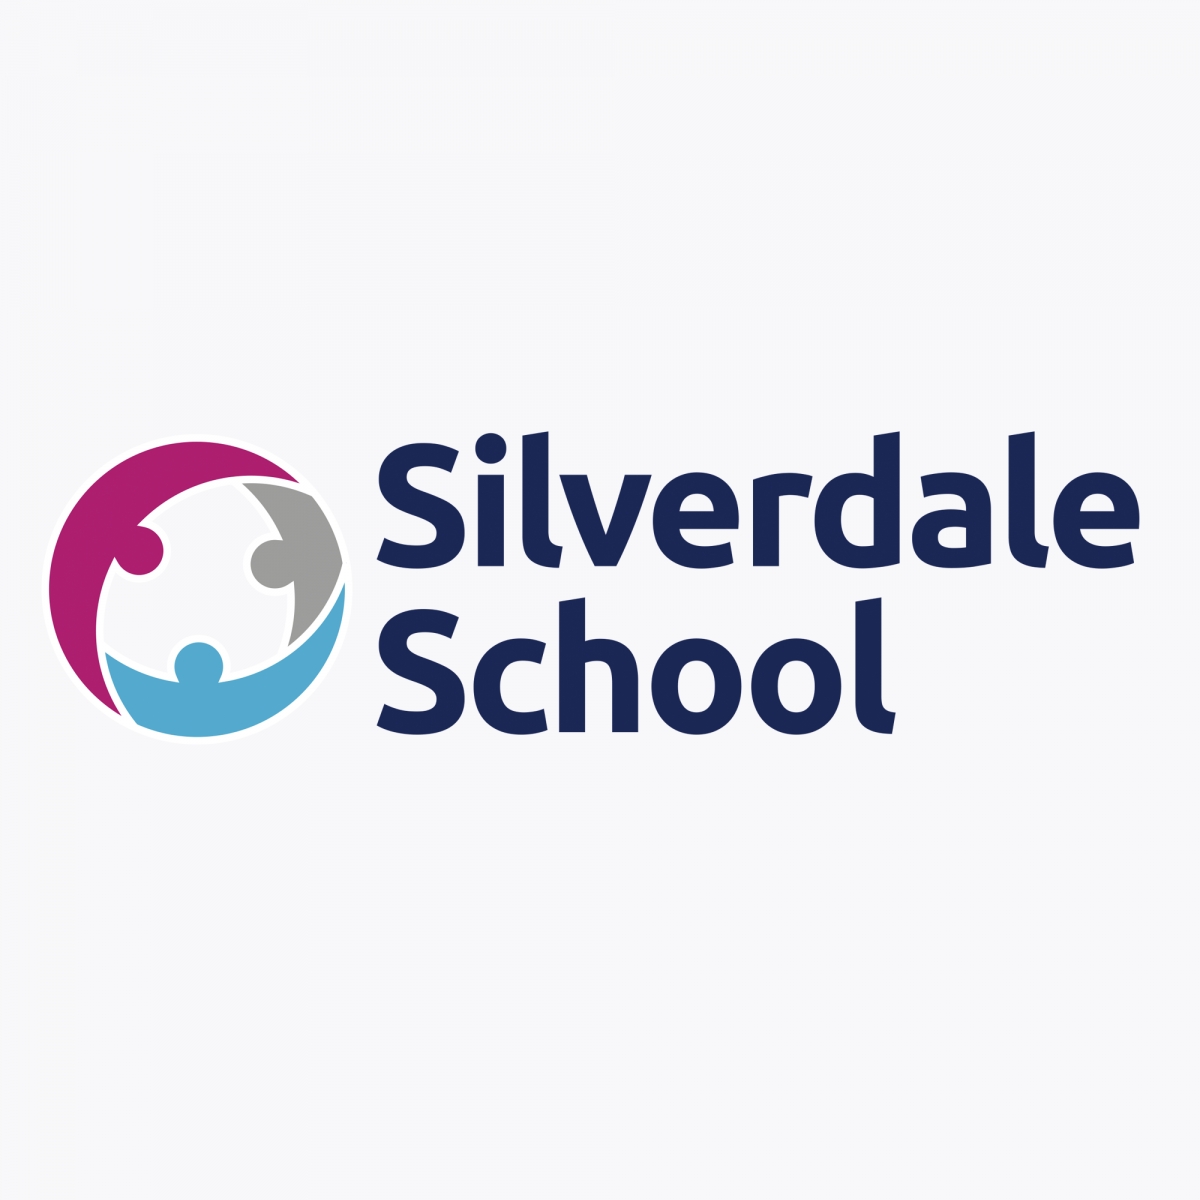 Silverdale School